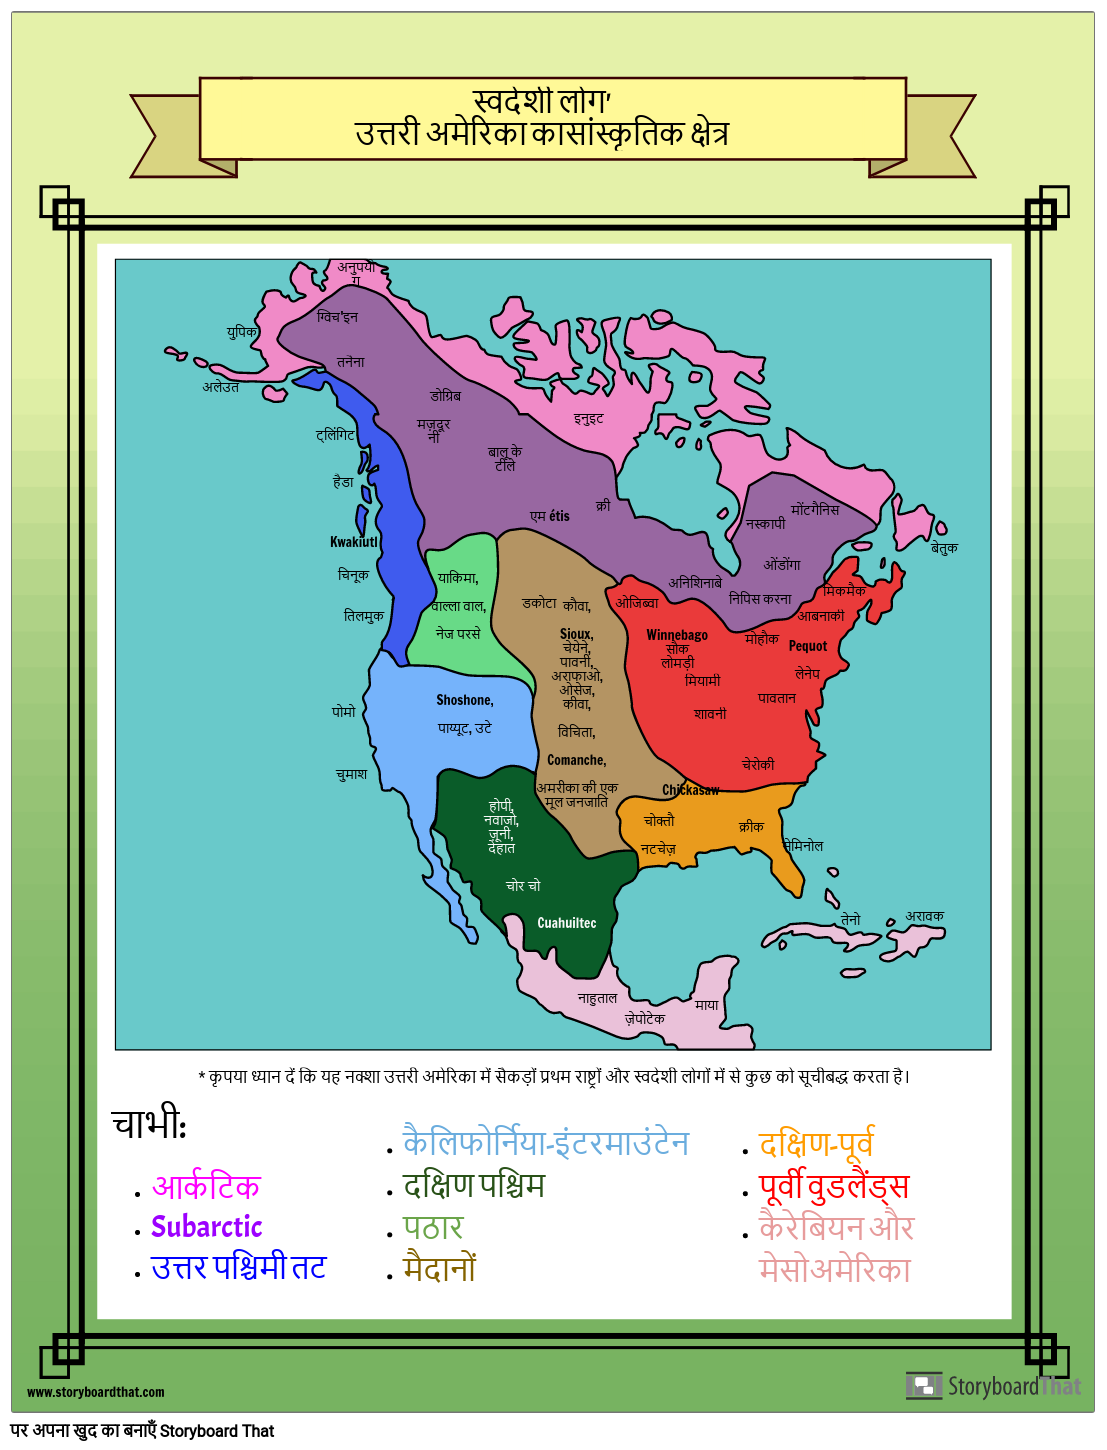 उत्तरी अमेरिका के नक्शे के स्वदेशी लोग